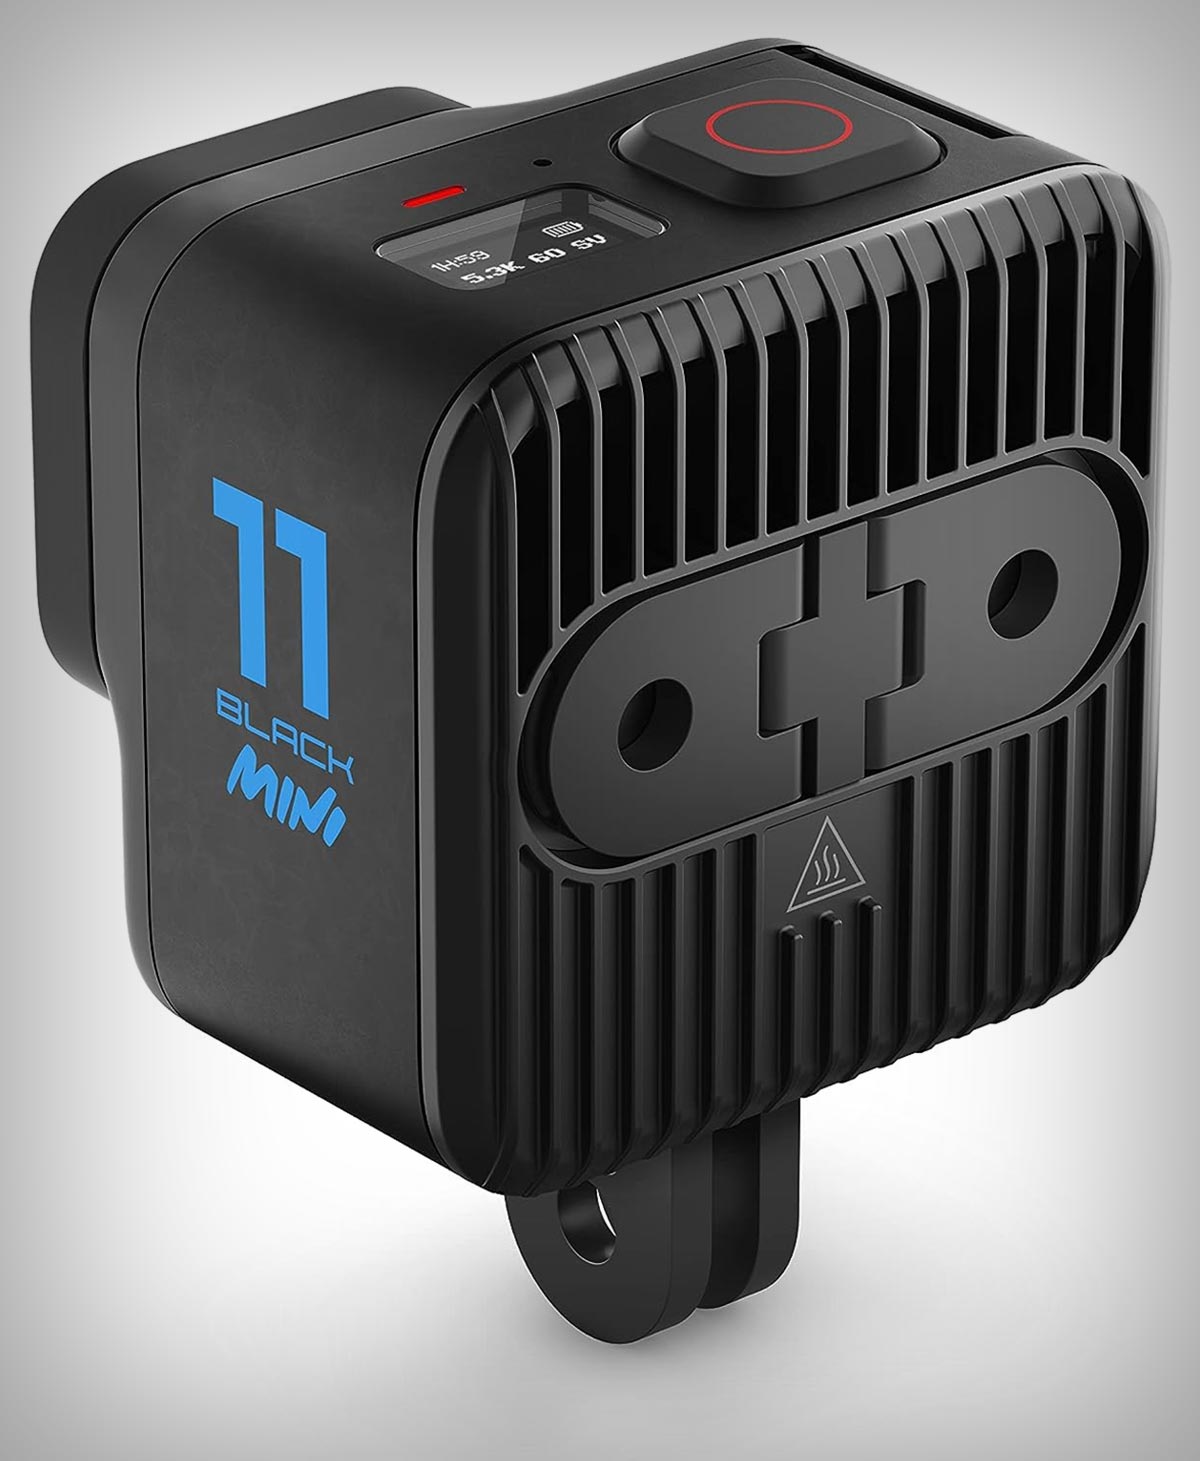 Cazando ofertas: la GoPro Hero 11 Black Mini, la cámara ideal para ciclistas, con más de 100 euros de descuento